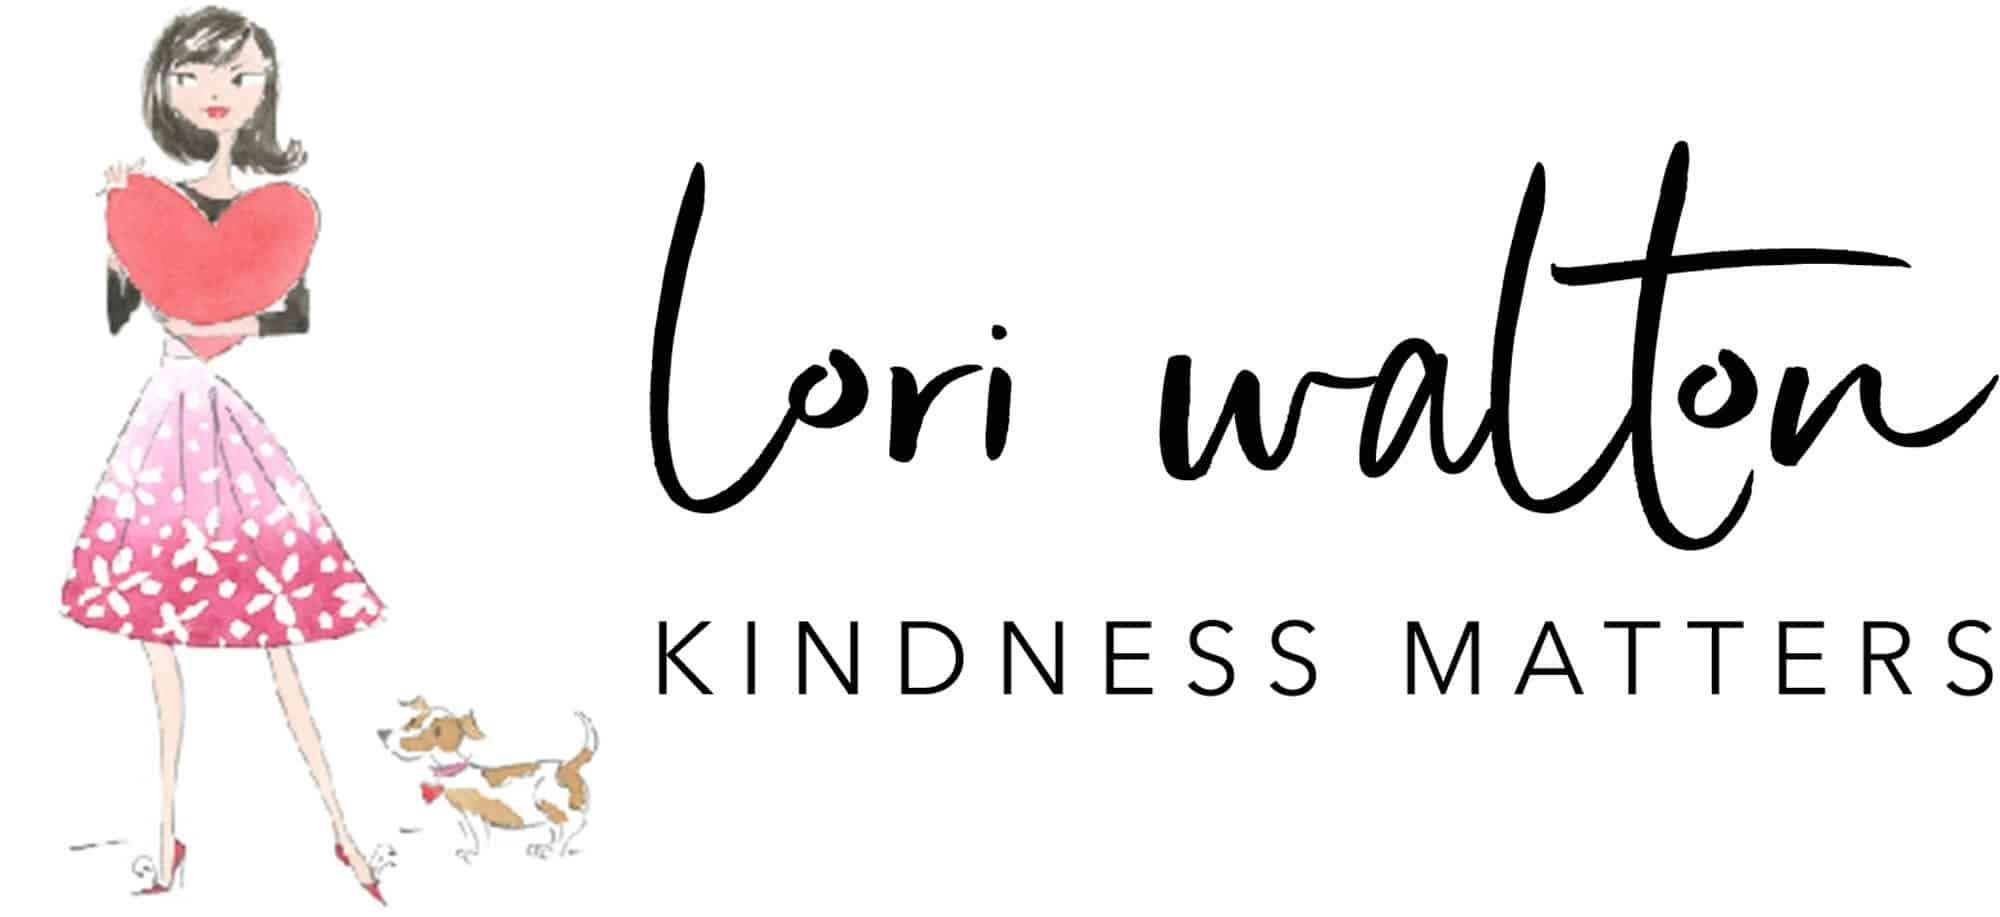 Lori Walton - Kindness Matters.jpg